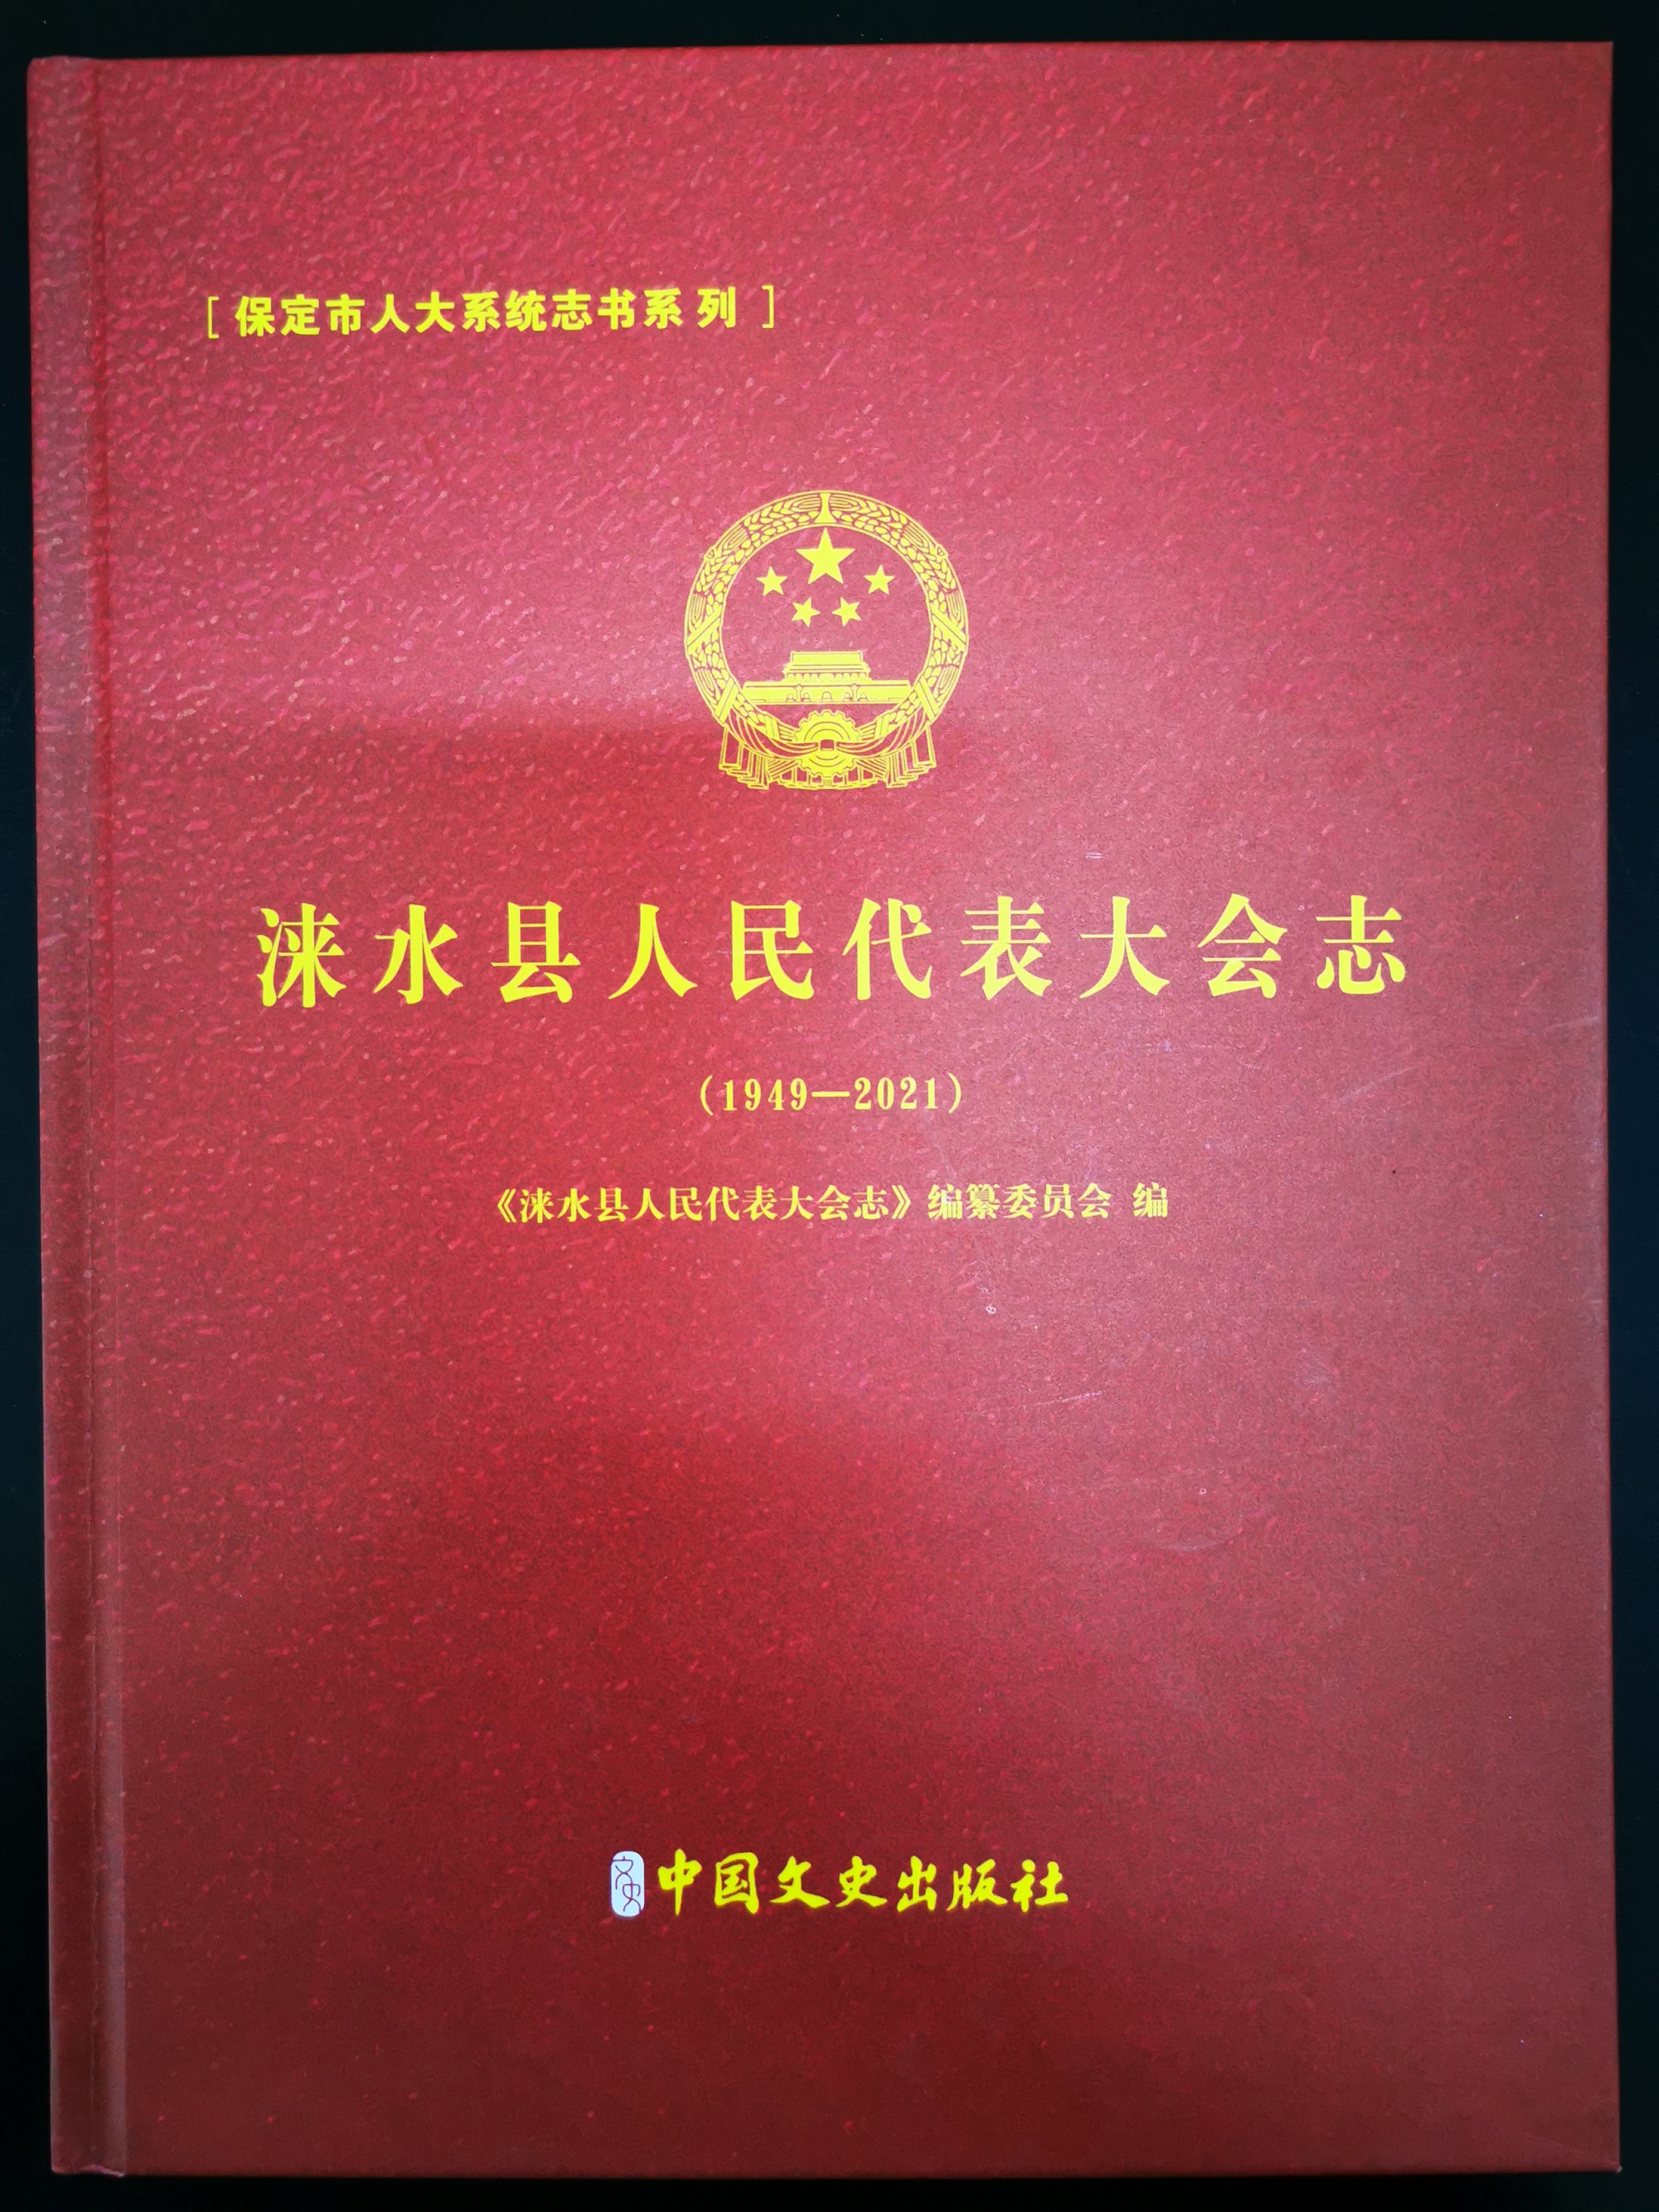 《涞水县人民代表大会志》出版发行